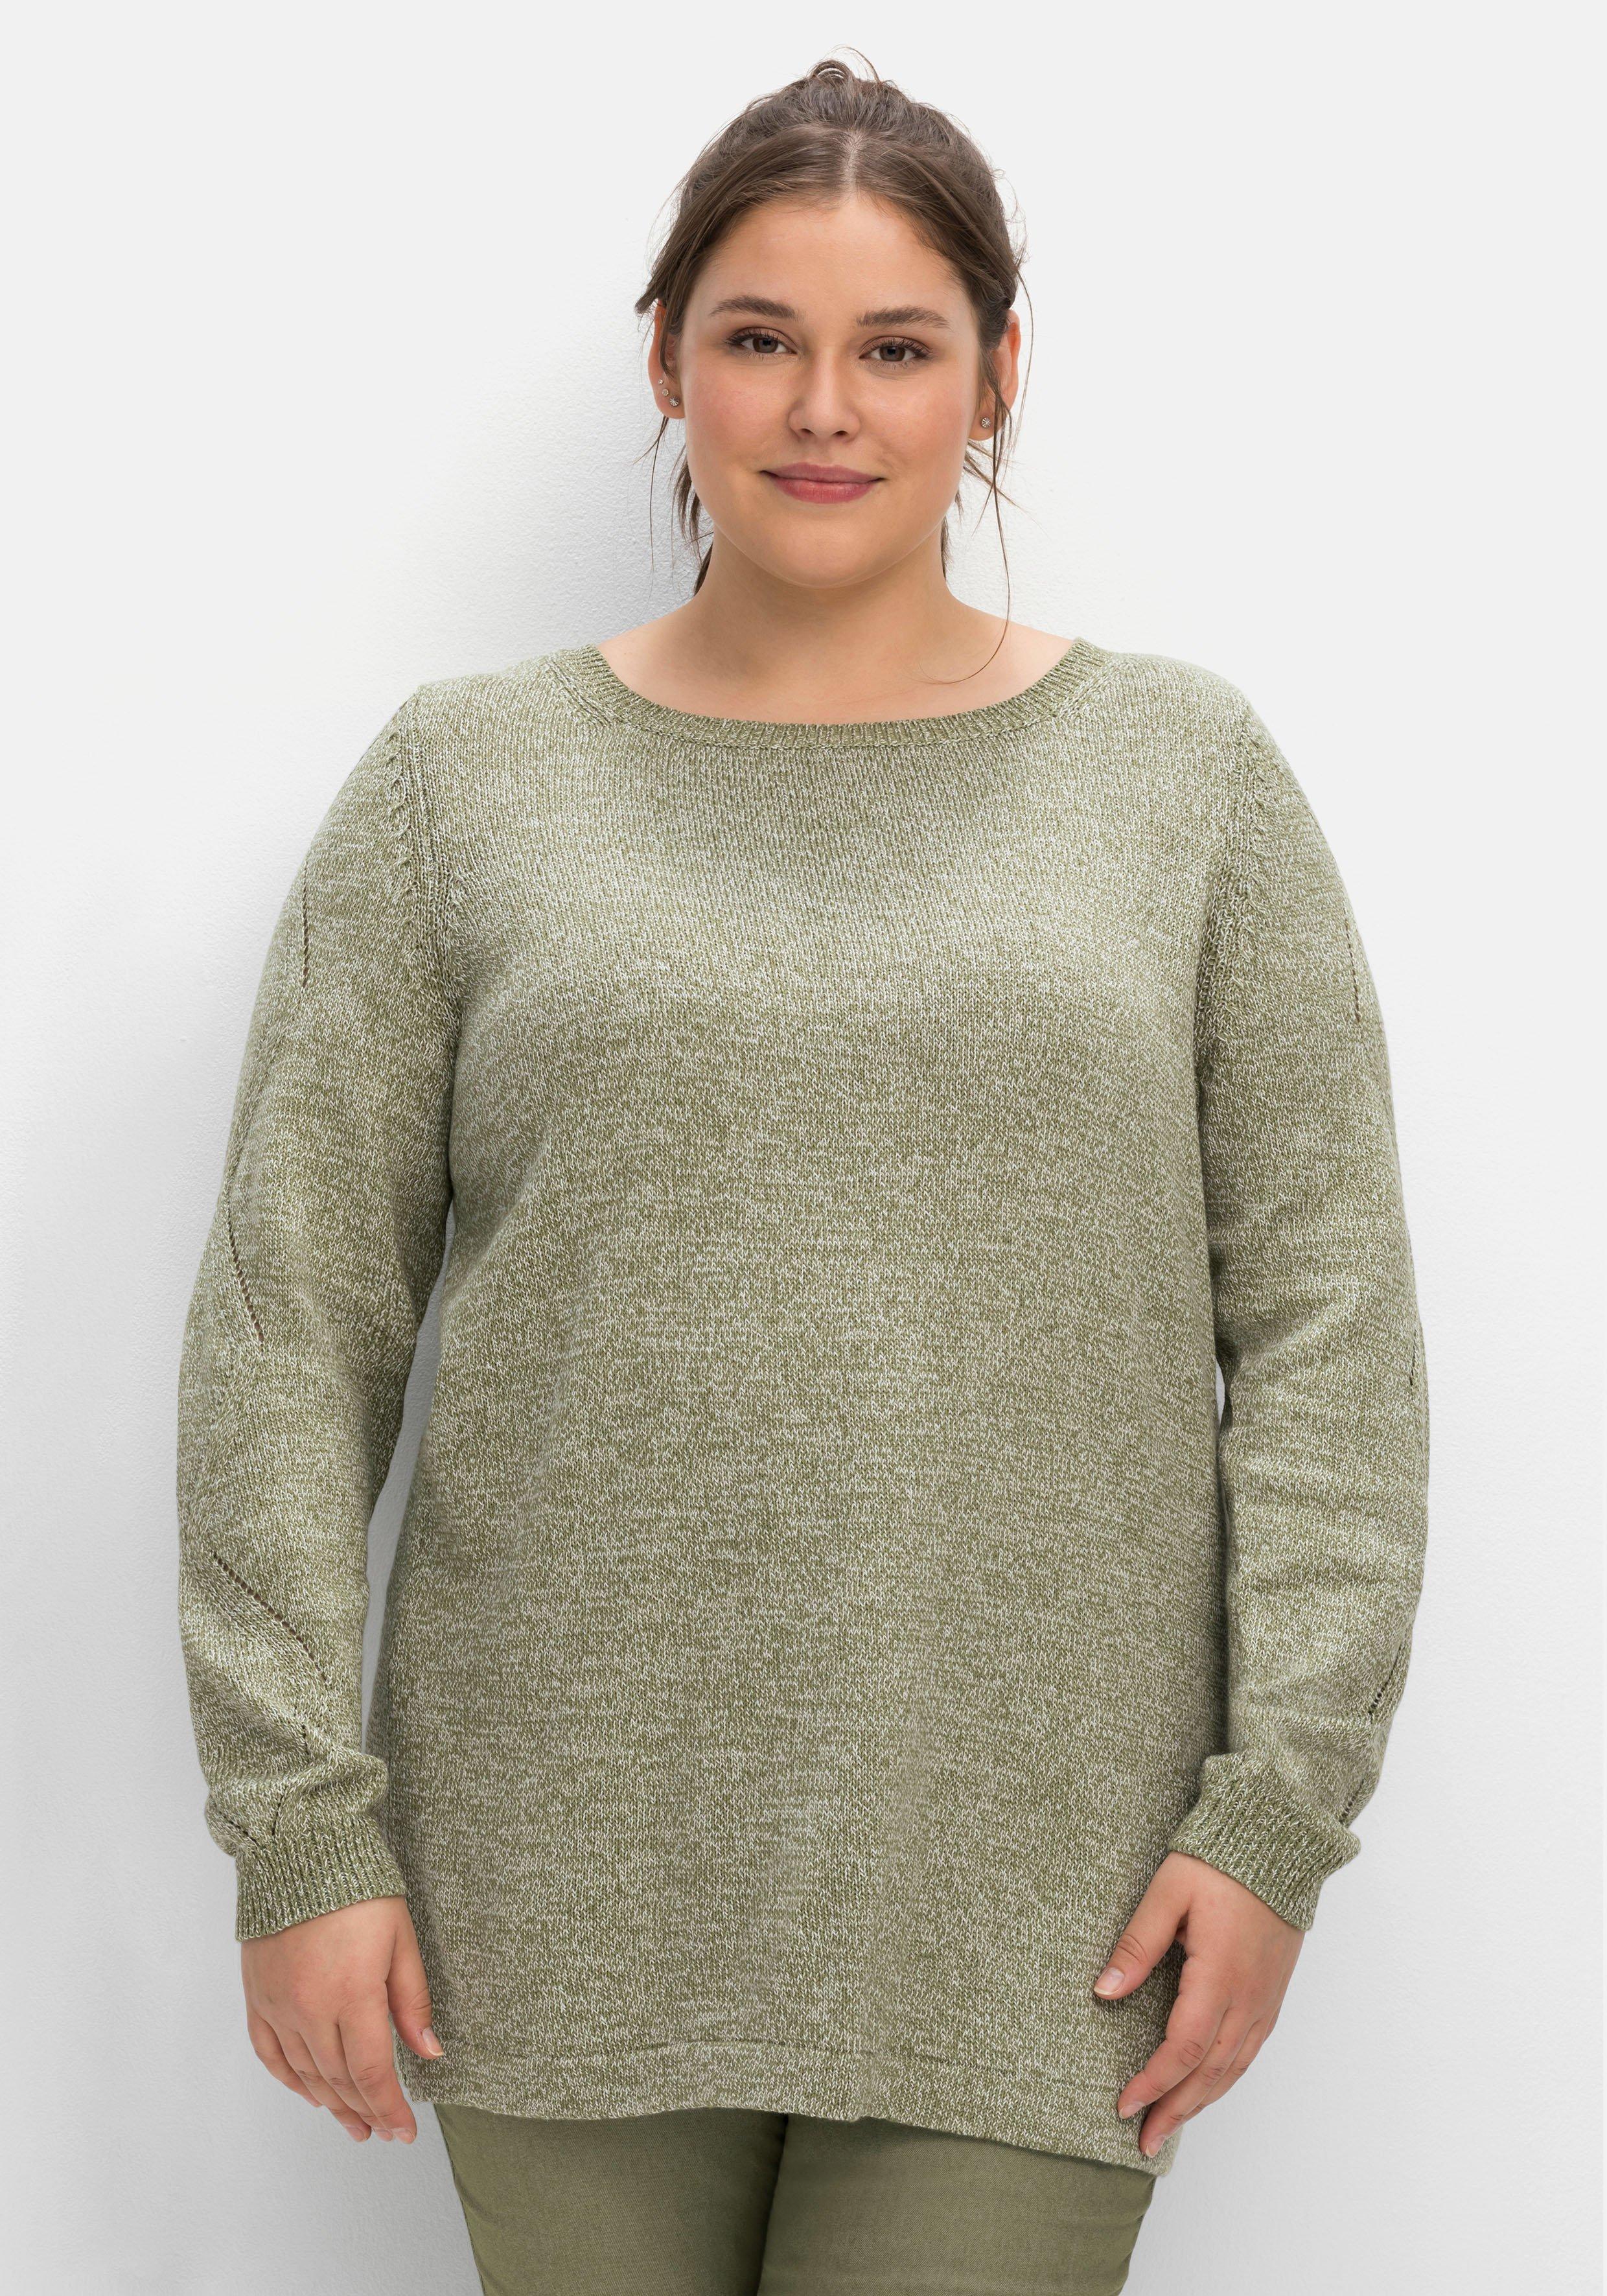 Damen Pullover & große | ♥ grün Größen sheego Mode Plus Größe › Strickjacken Size 48